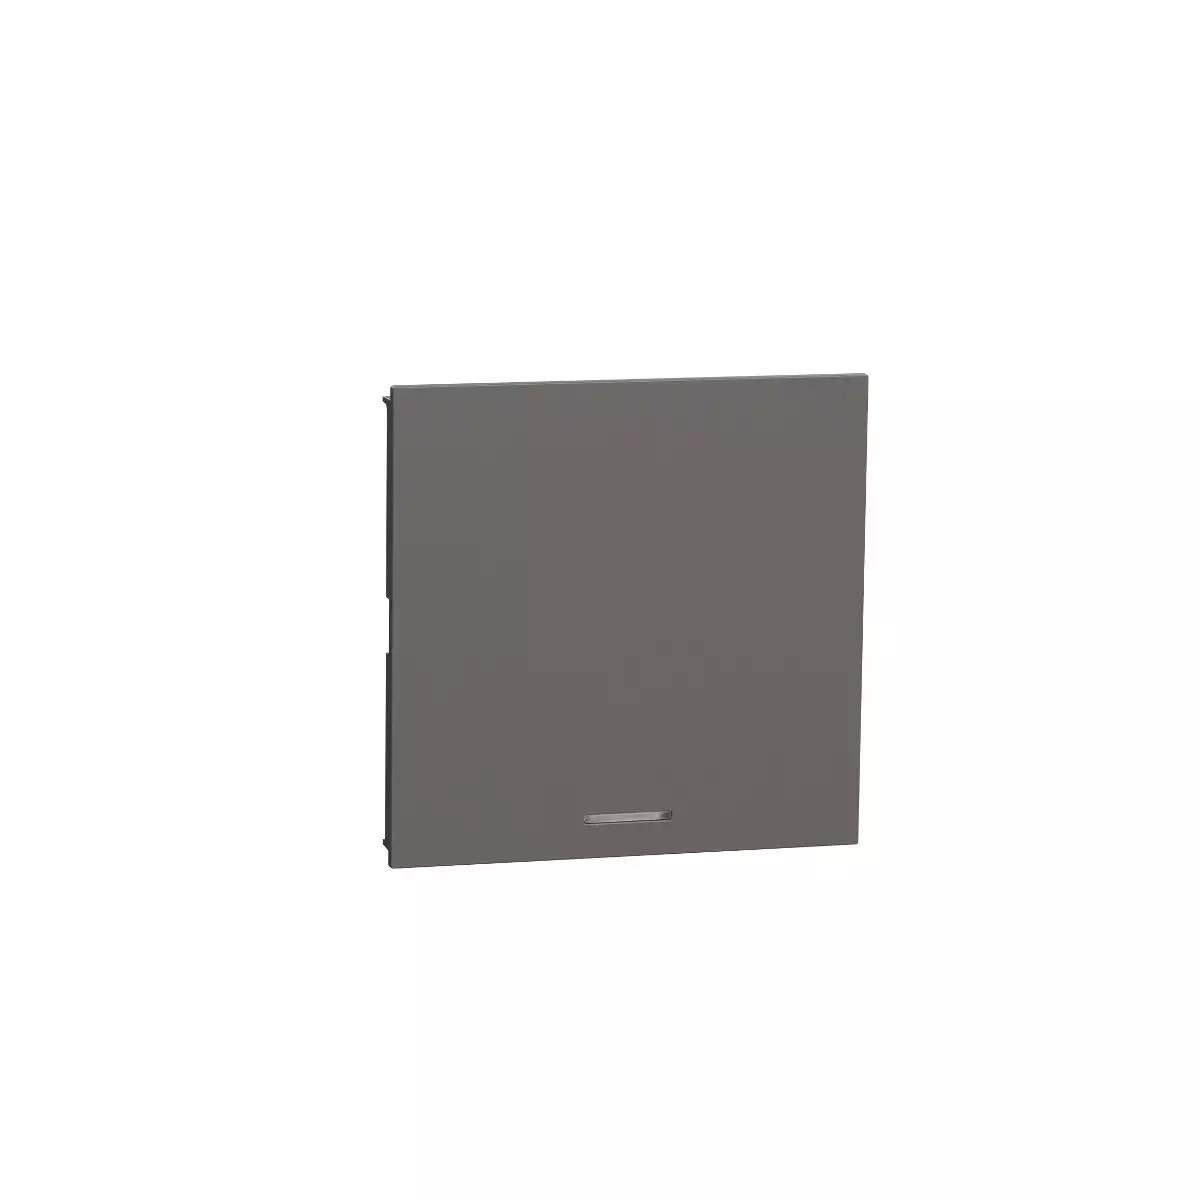 Switch, Avataron A, 16AX 250V, 2 Way, E sized, Black